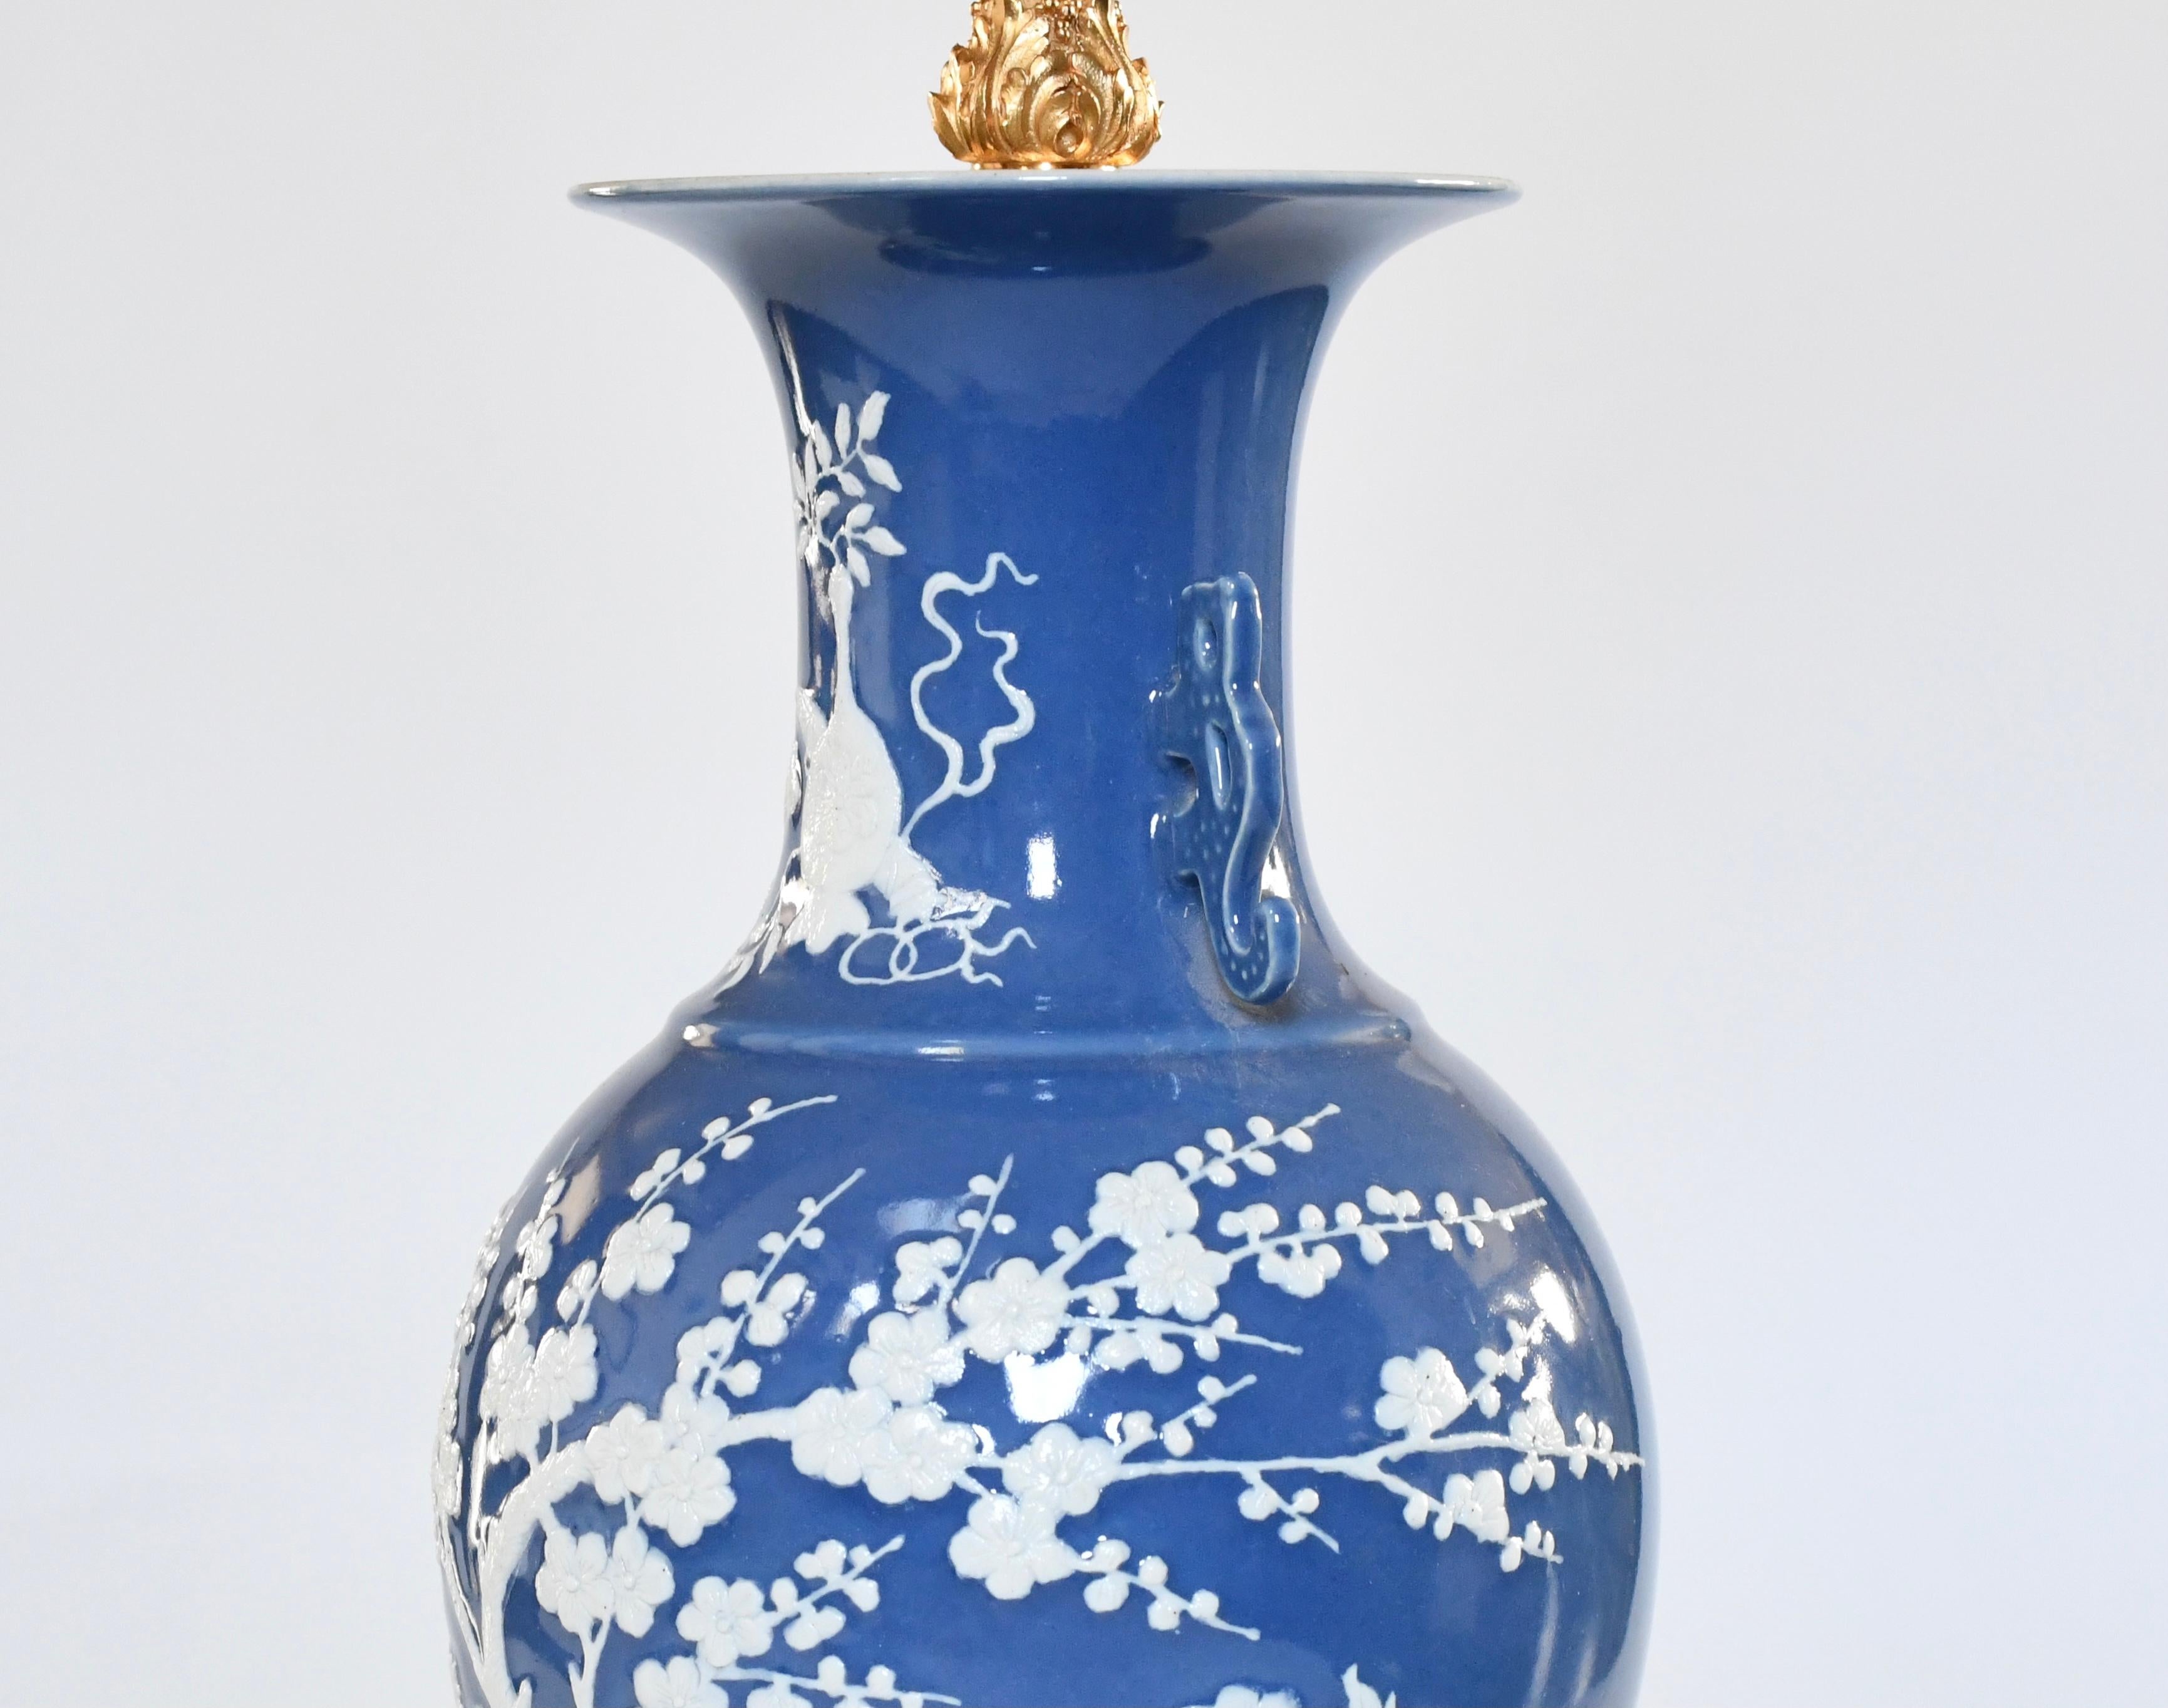 Paire de vases en porcelaine émaillée bleue à décor de fleurs en relief.
Socles et décorations en laiton doré
L'abat-jour n'est pas inclus.